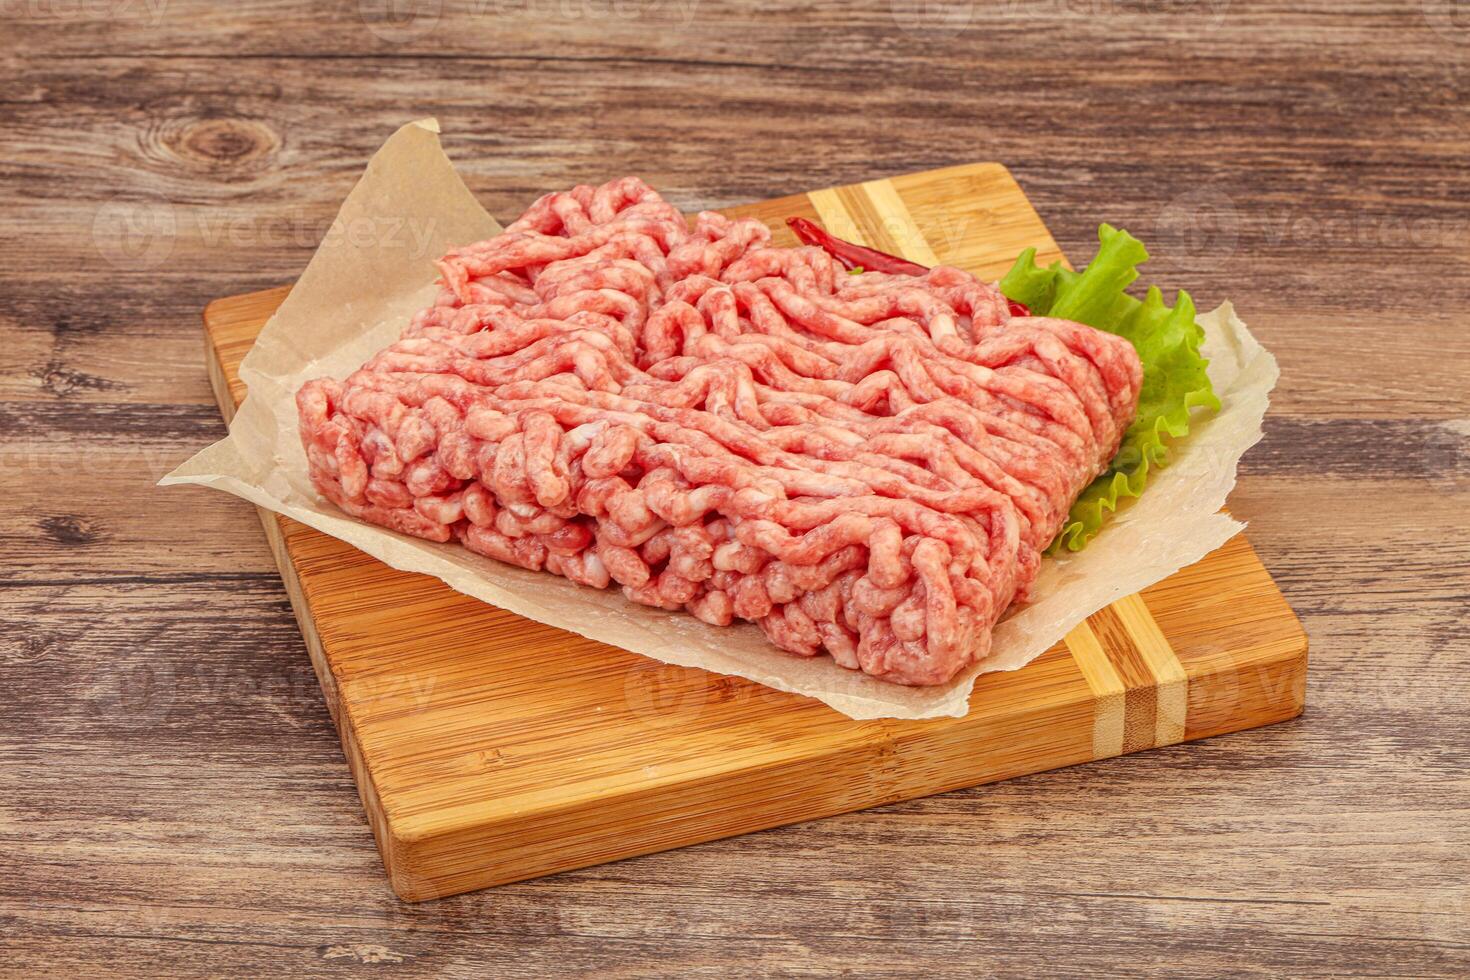 viande hachée - porc et boeuf photo